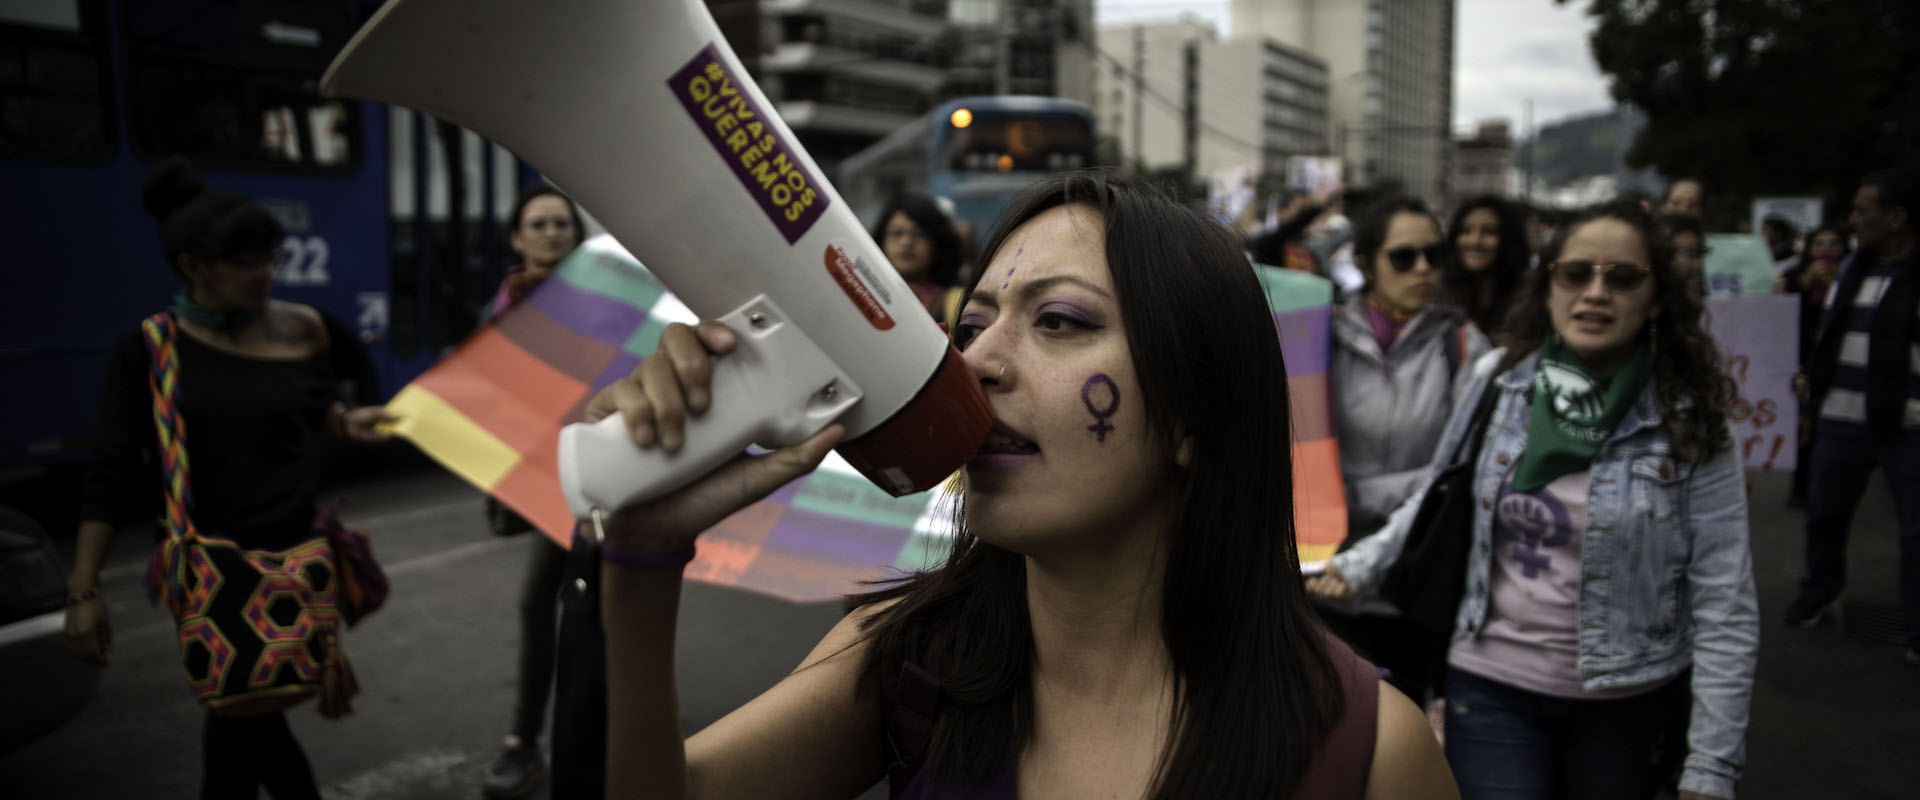 Activistas, líderes sociales, organizaciones, mujeres y hombres vocean consignas contra la violencia de género durante la protesta “Vivas nos queremos” en Quito (Ecuador). Fotografía: ONU Mujeres/Johis Alarcóna